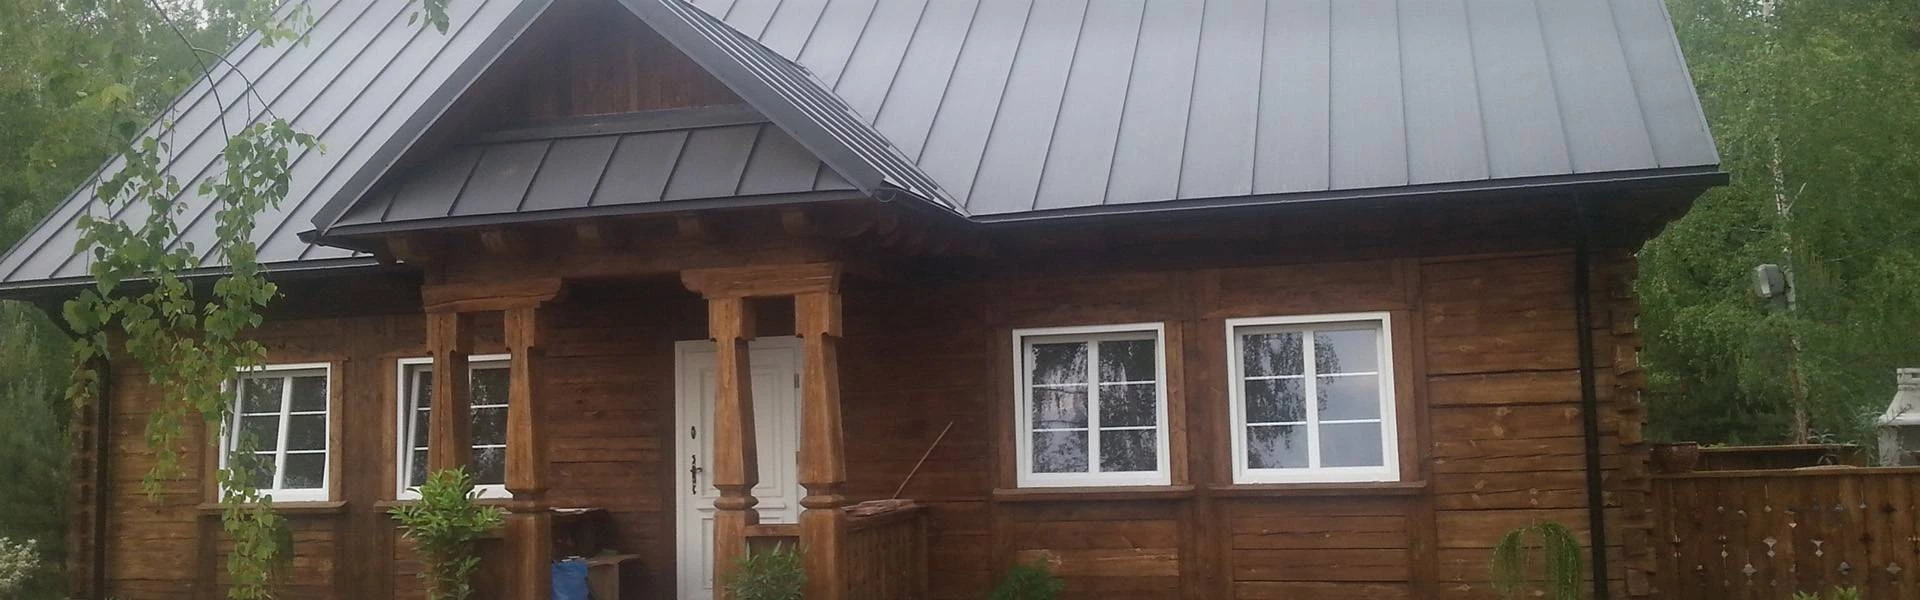 drewniana chata z białymi oknami